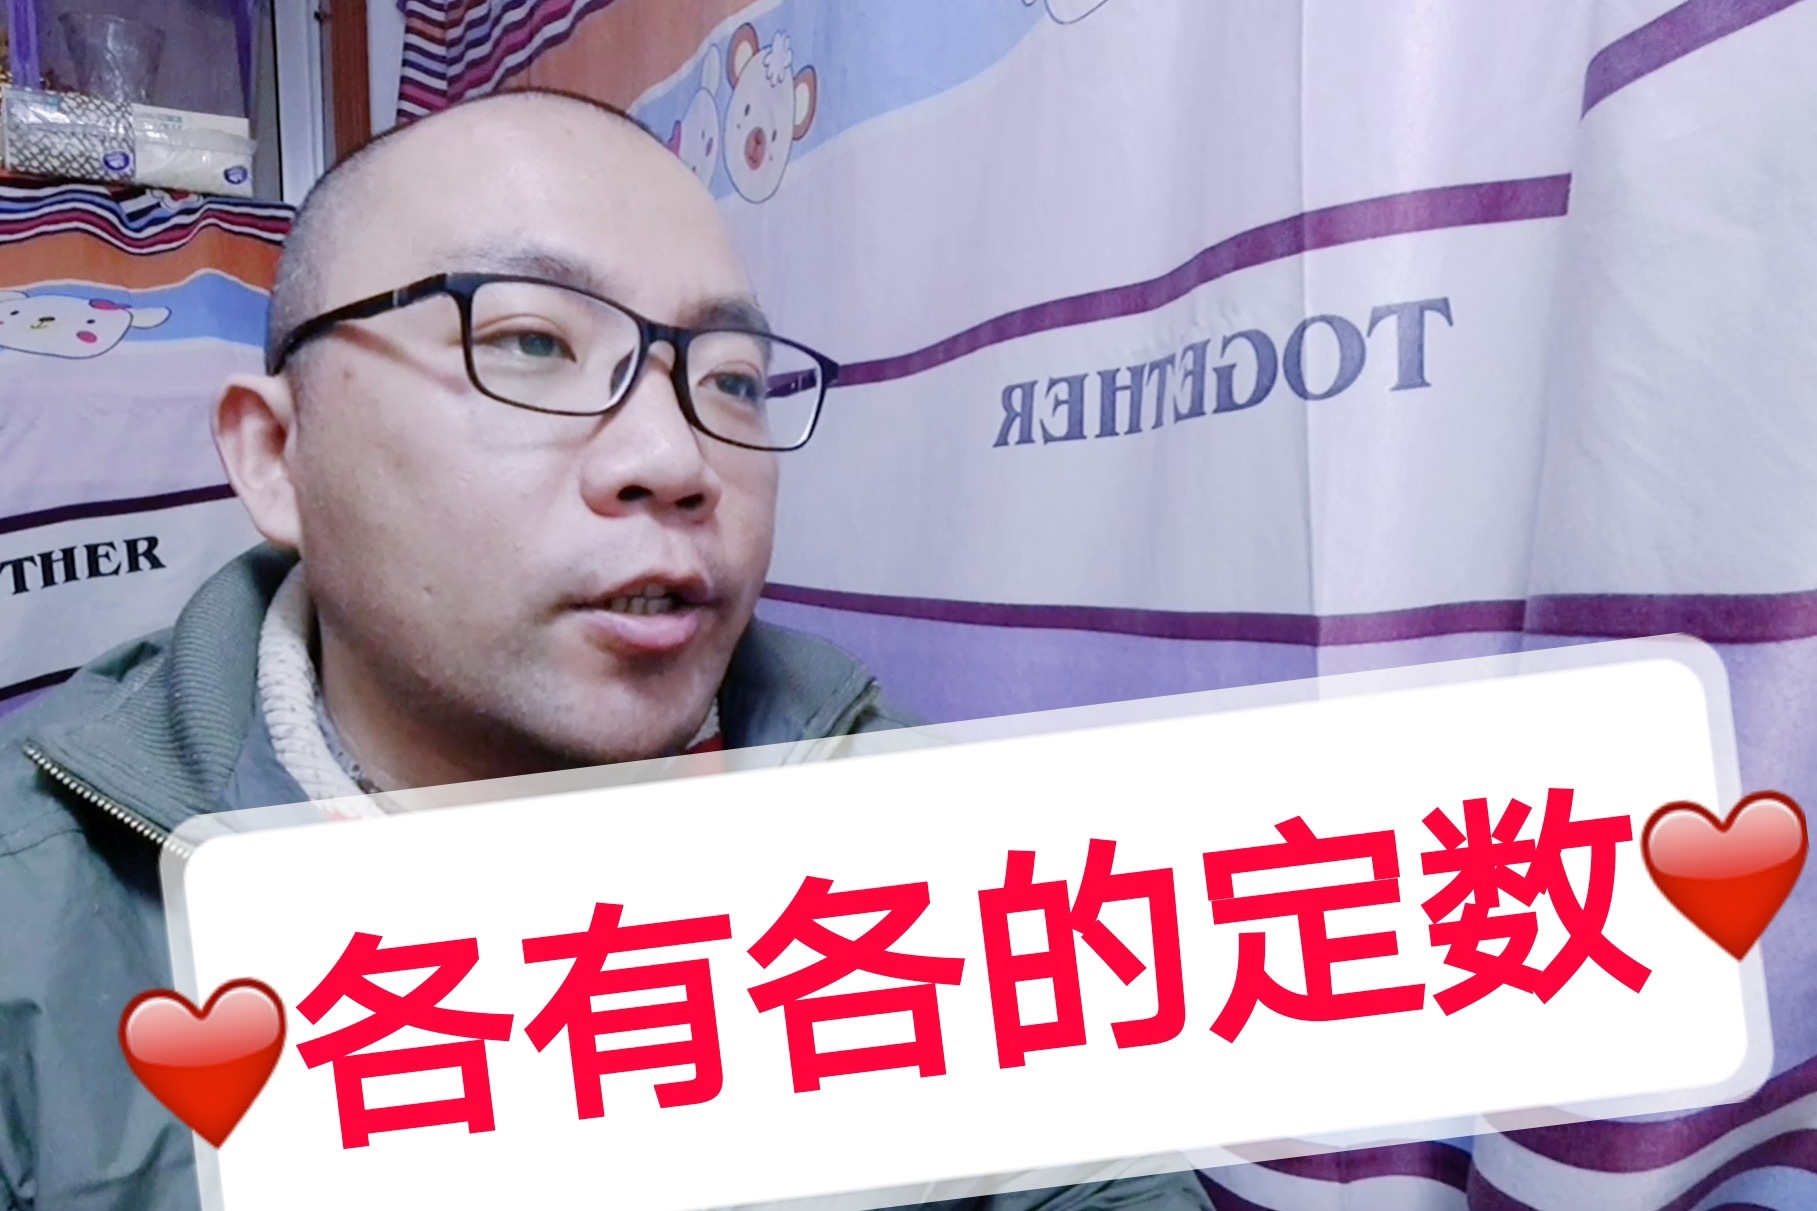 佩洛西窜访台湾后患无穷 学者批评作政治秀_凤凰网视频_凤凰网